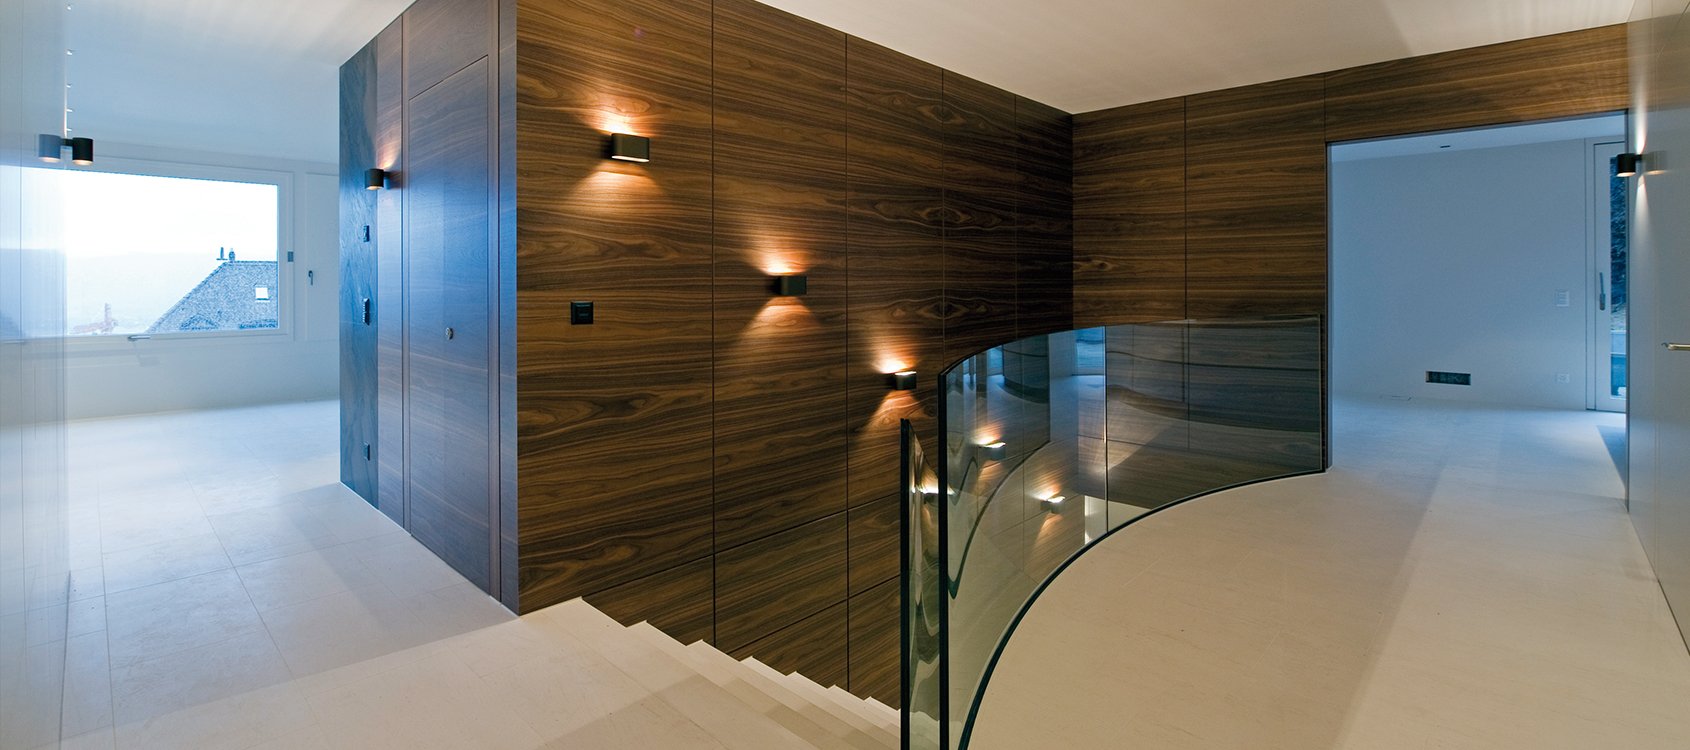 Obrist interior AG - Luxury apartment - Zurich - Switzerland